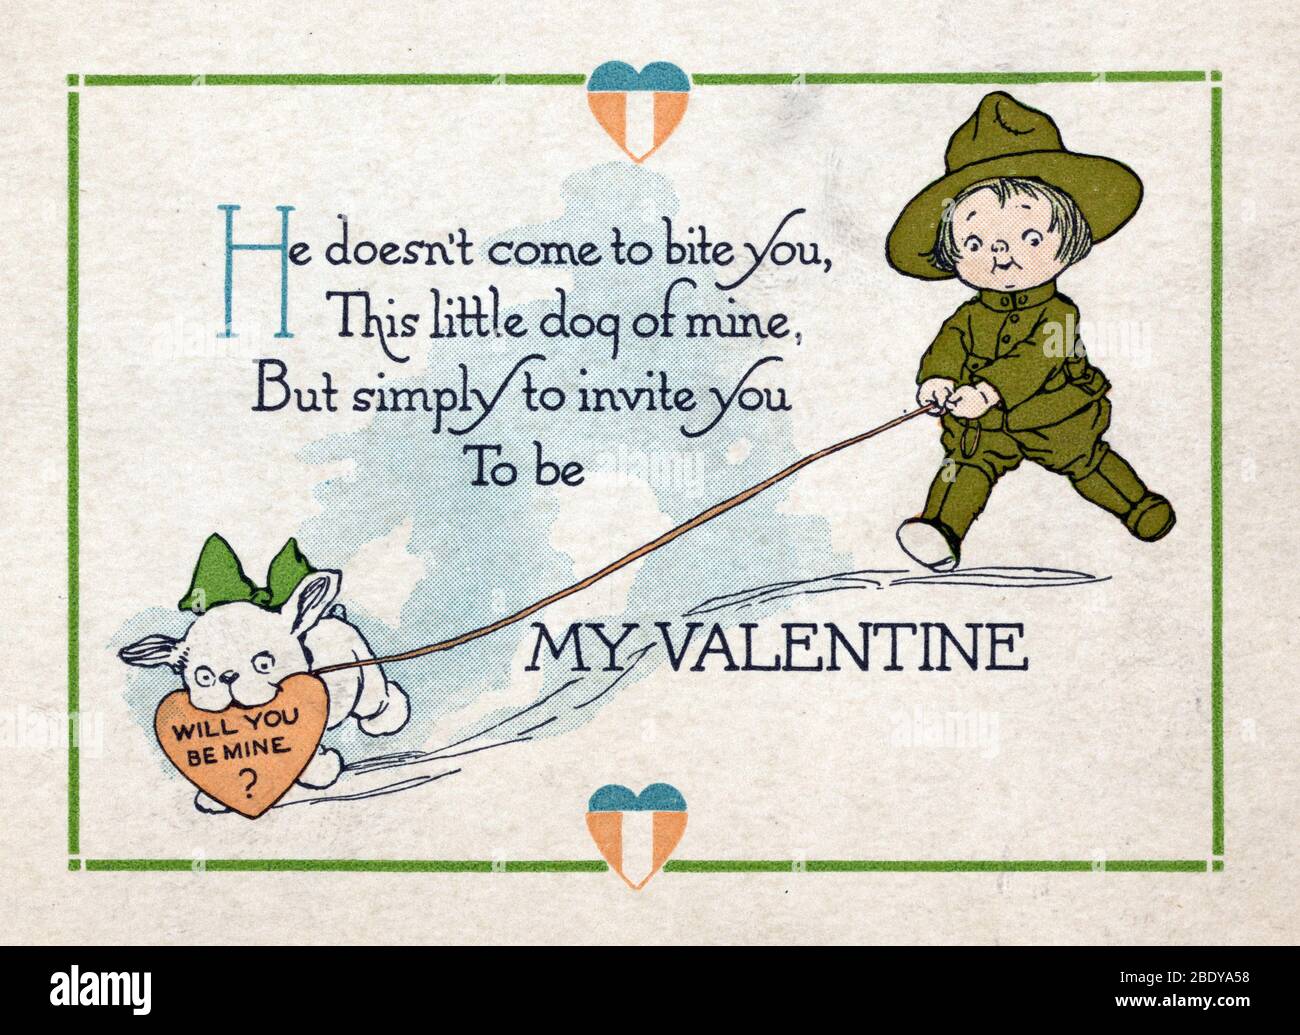 Première Guerre mondiale, « serez-vous la mine ? », carte de Saint-Valentin, 1919 Banque D'Images